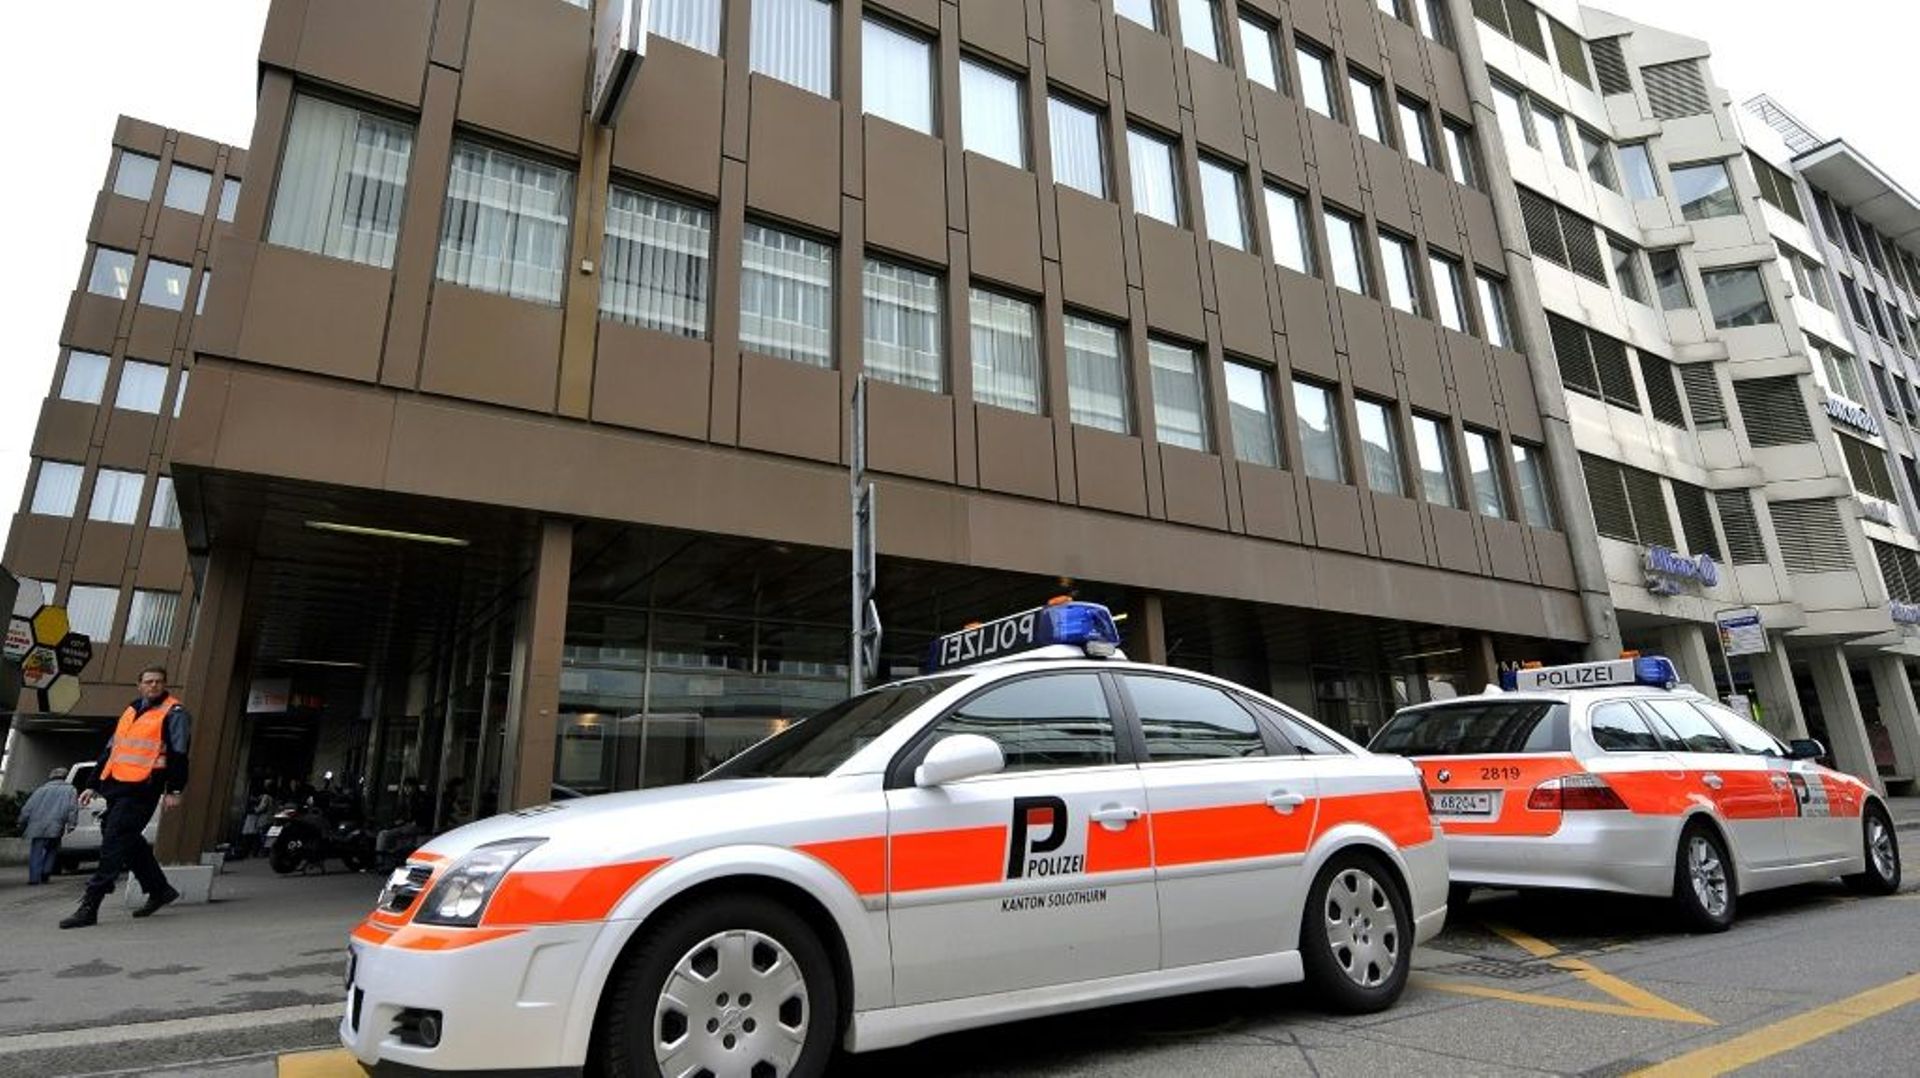 Selon des médias suisses, la fusillade s'est produite près d'un centre de prière musulman